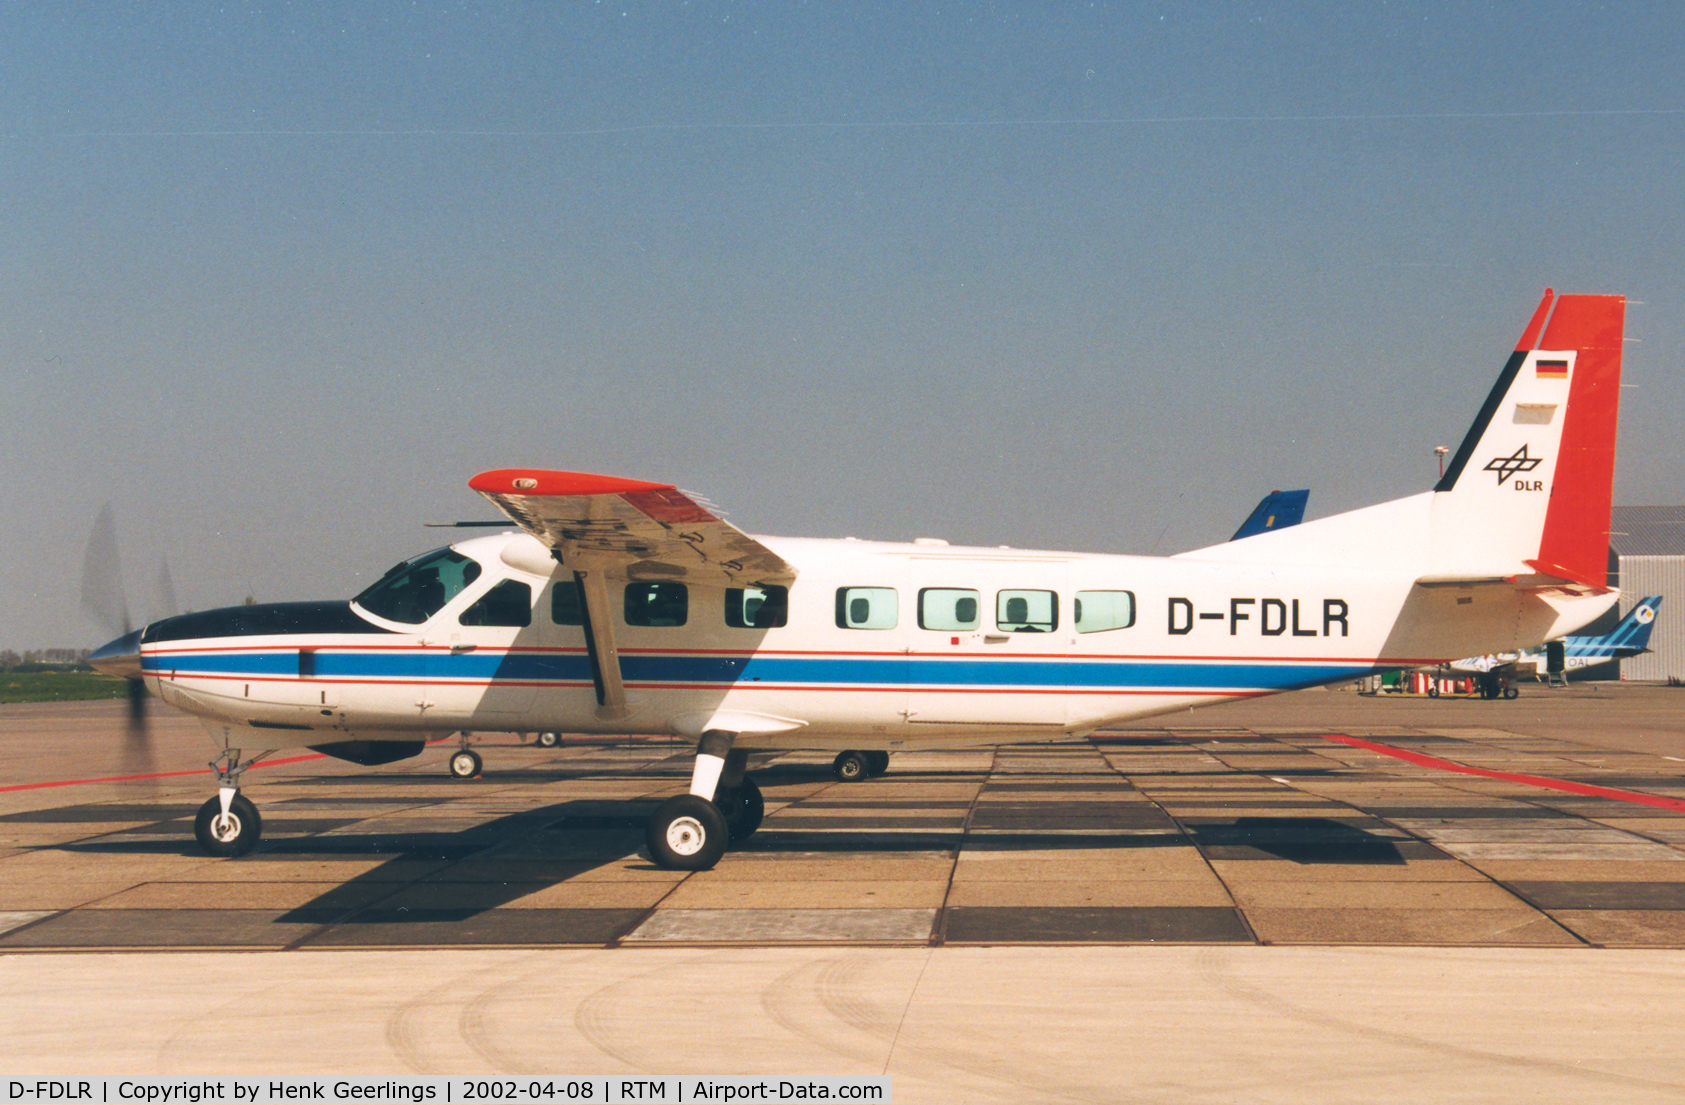 D-FDLR, 1998 Cessna 208B Grand Caravan C/N 208B-0708, DLR Flugbetriebe